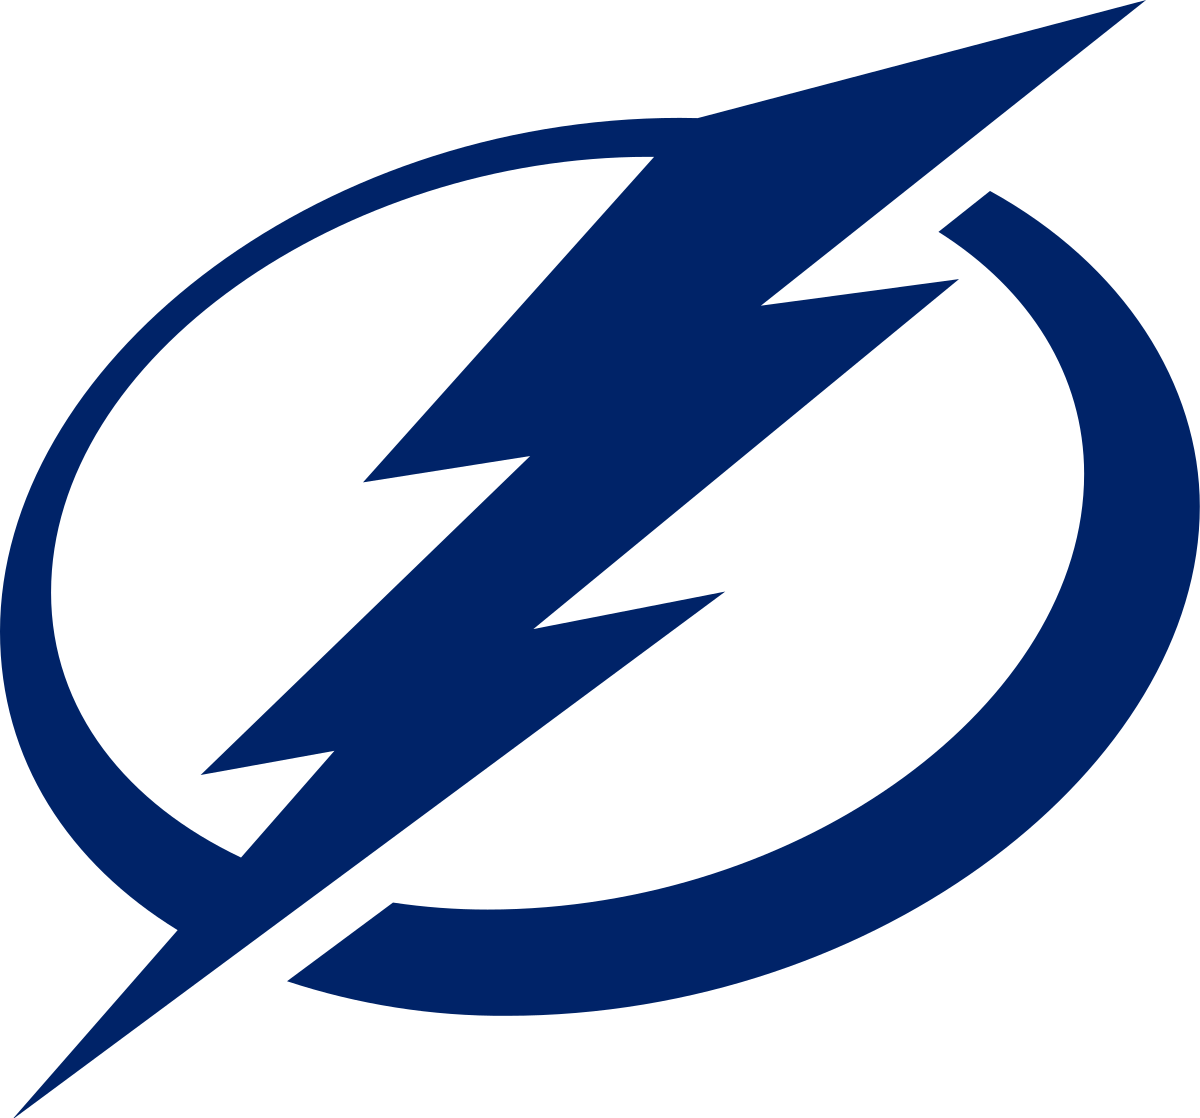 Tampa Bay Lightning Logo Blank Meme Template